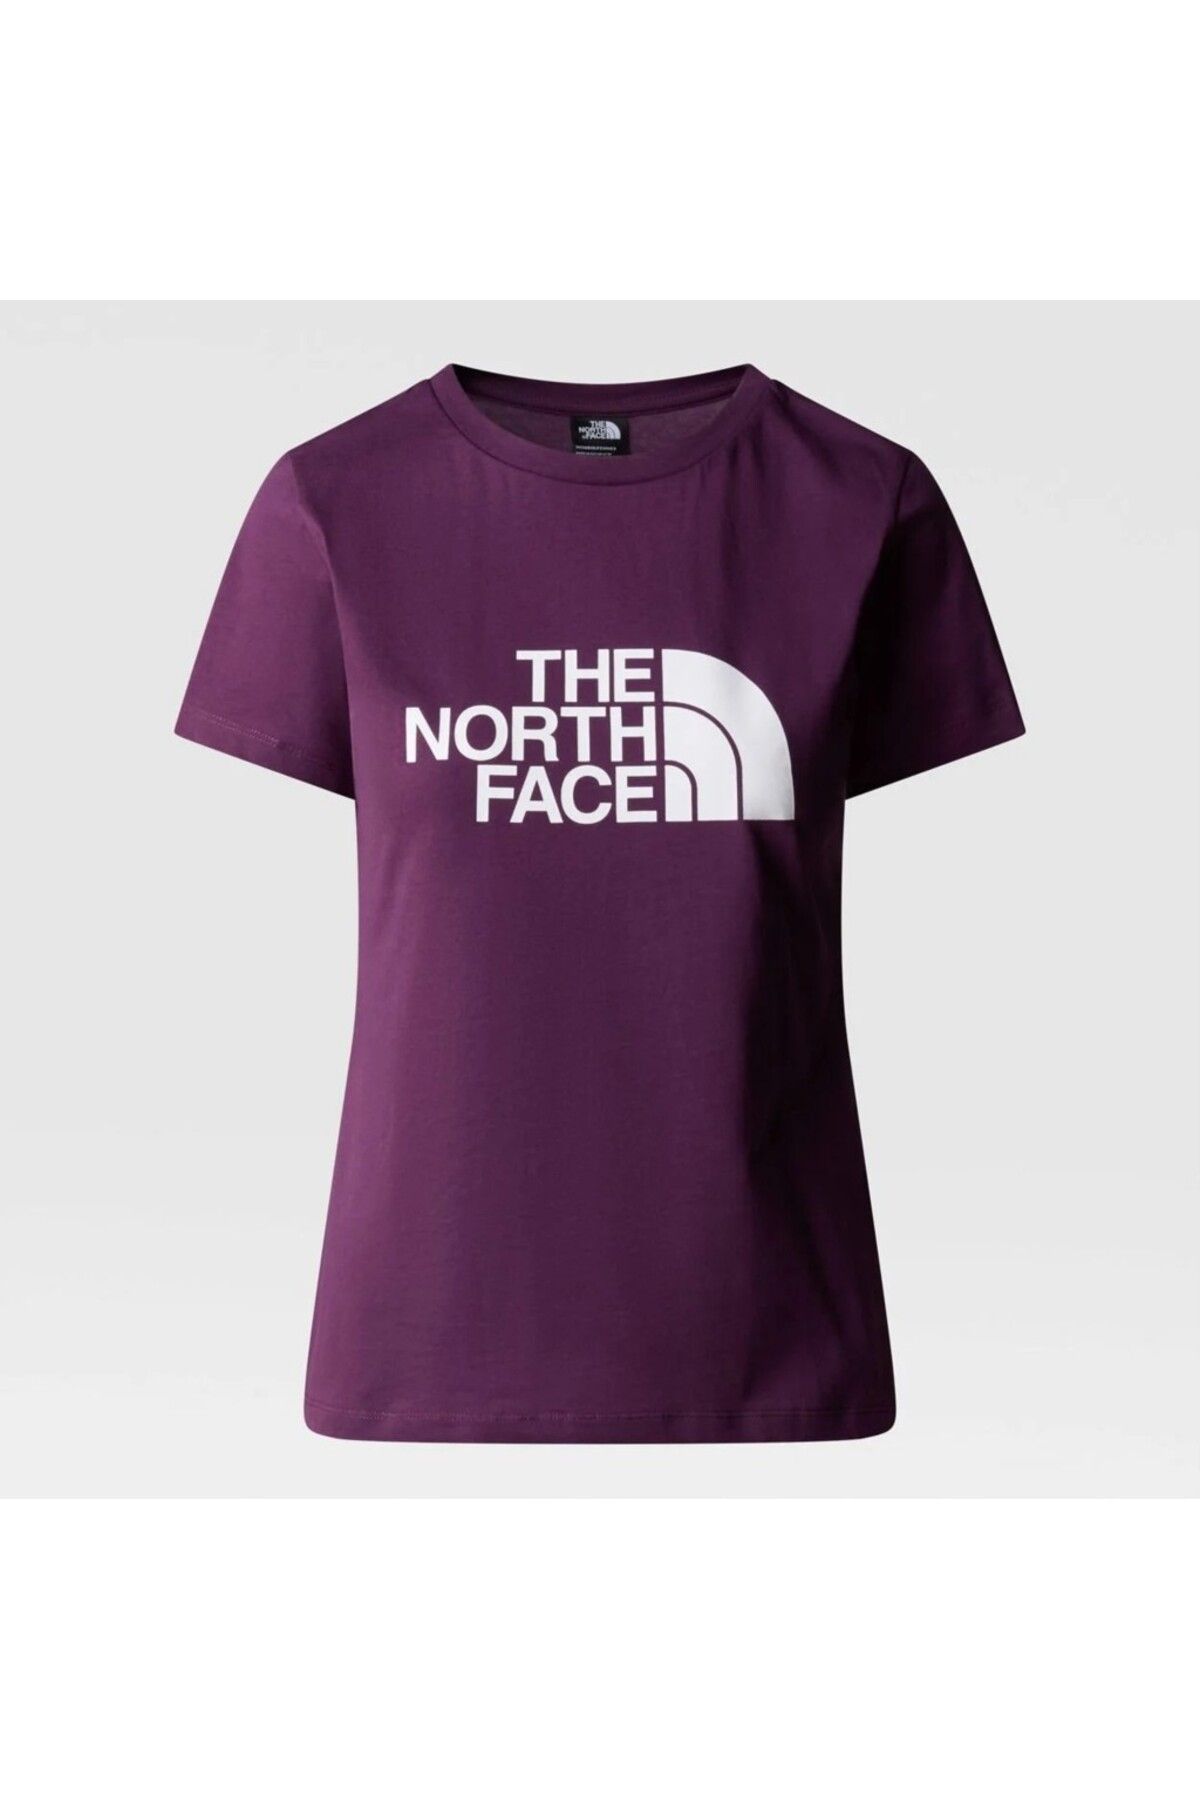 The North Face Easy Kadın Mor Yuvarlak Yaka Tişört